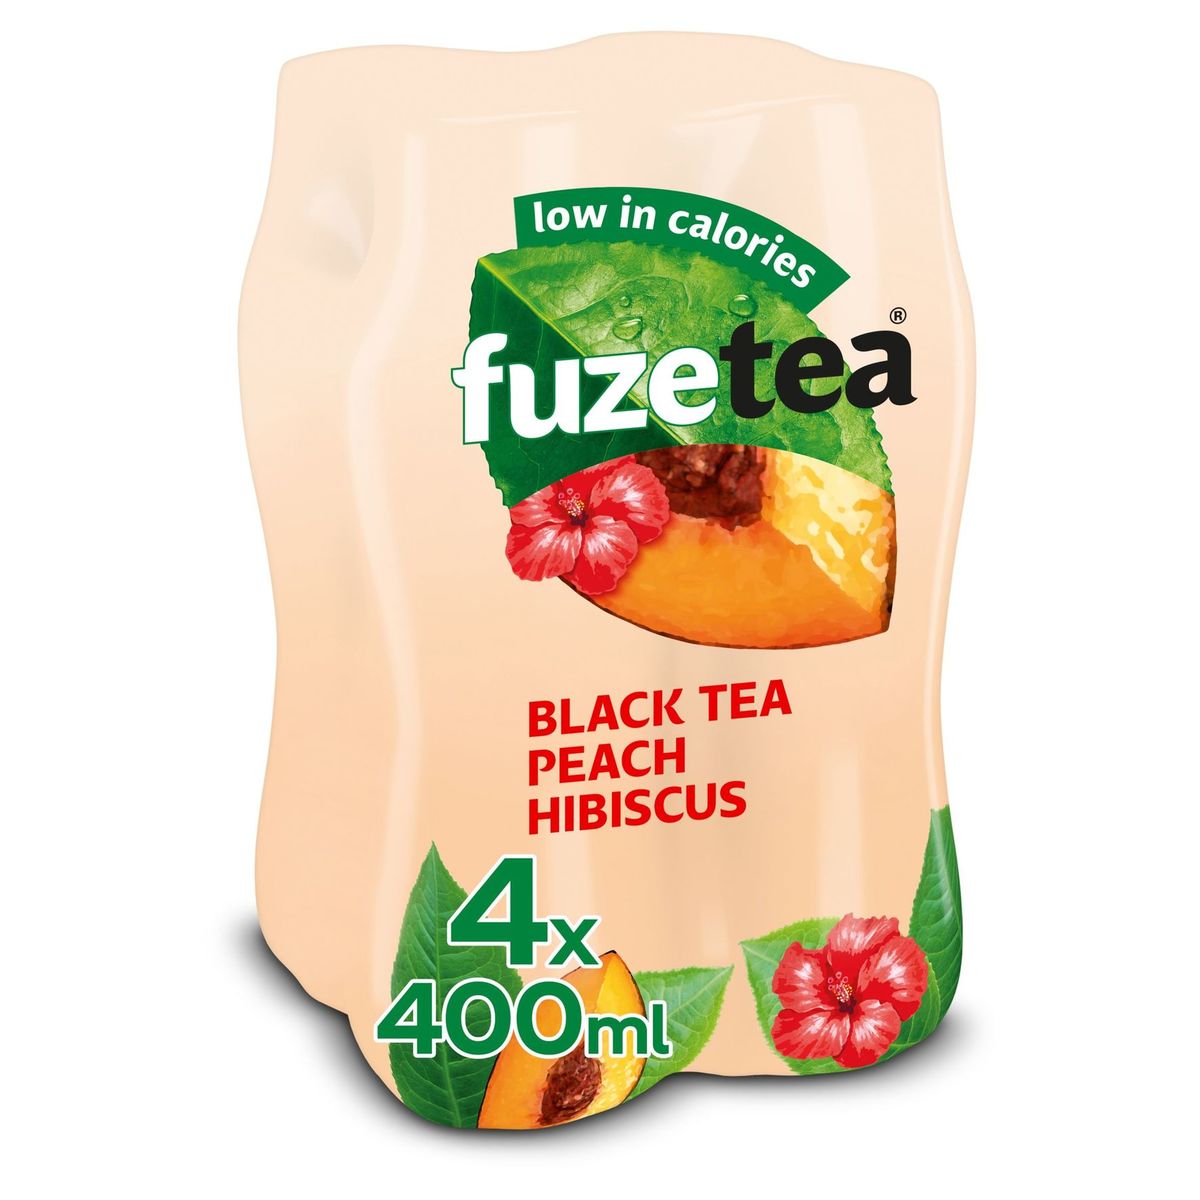 Fuze Tea Black Tea Peach Hibiscus  Iced Tea 4 x 400 ml